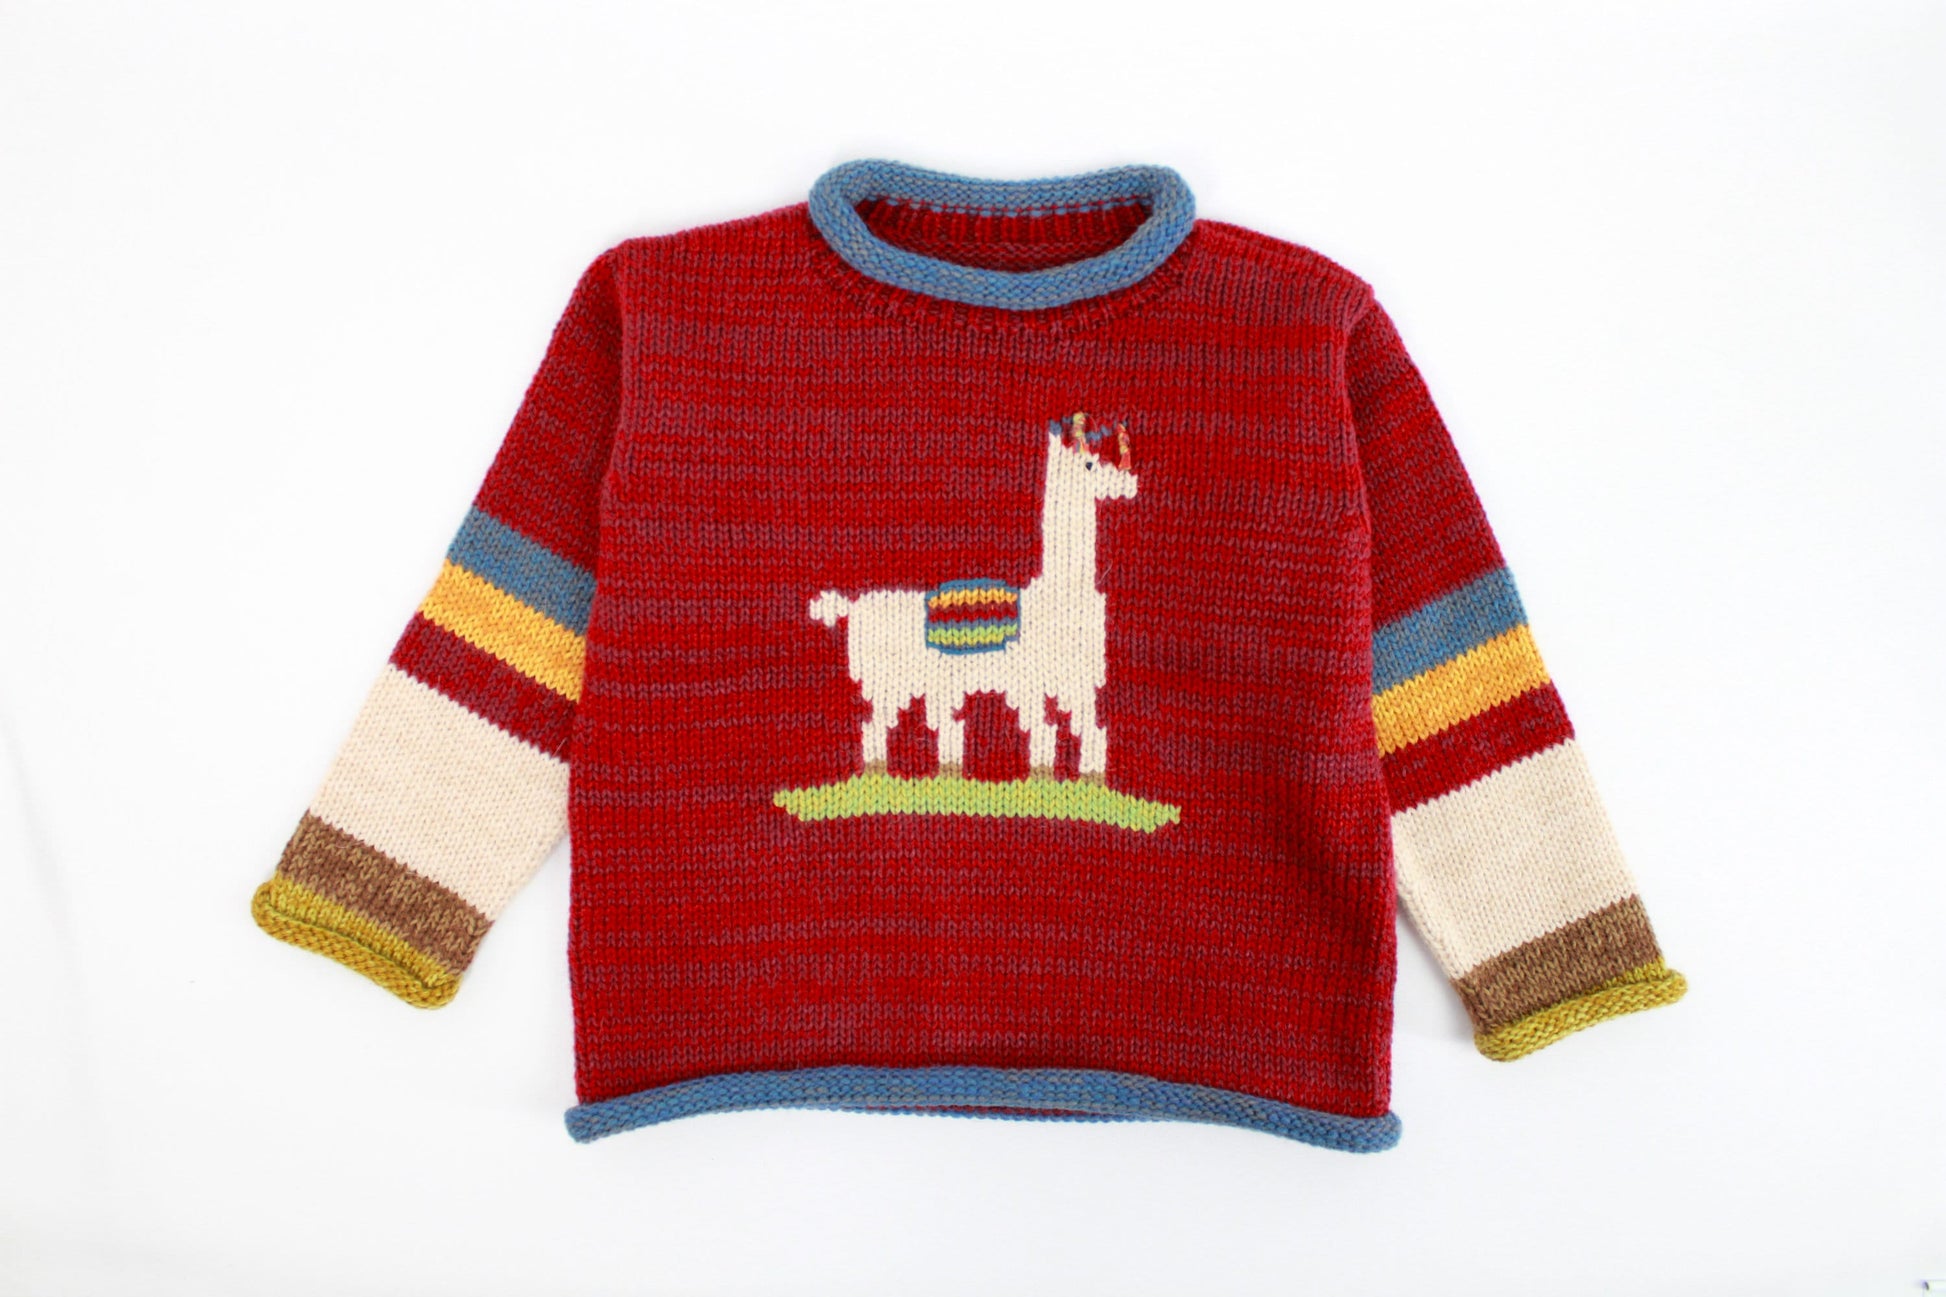 Kinderpullover 110/115 aus Alpaka handgemacht in Peru Strickpullover Herbst warm Pullover Wolle Weihnachten Geschenk Geburtstag Kindermode